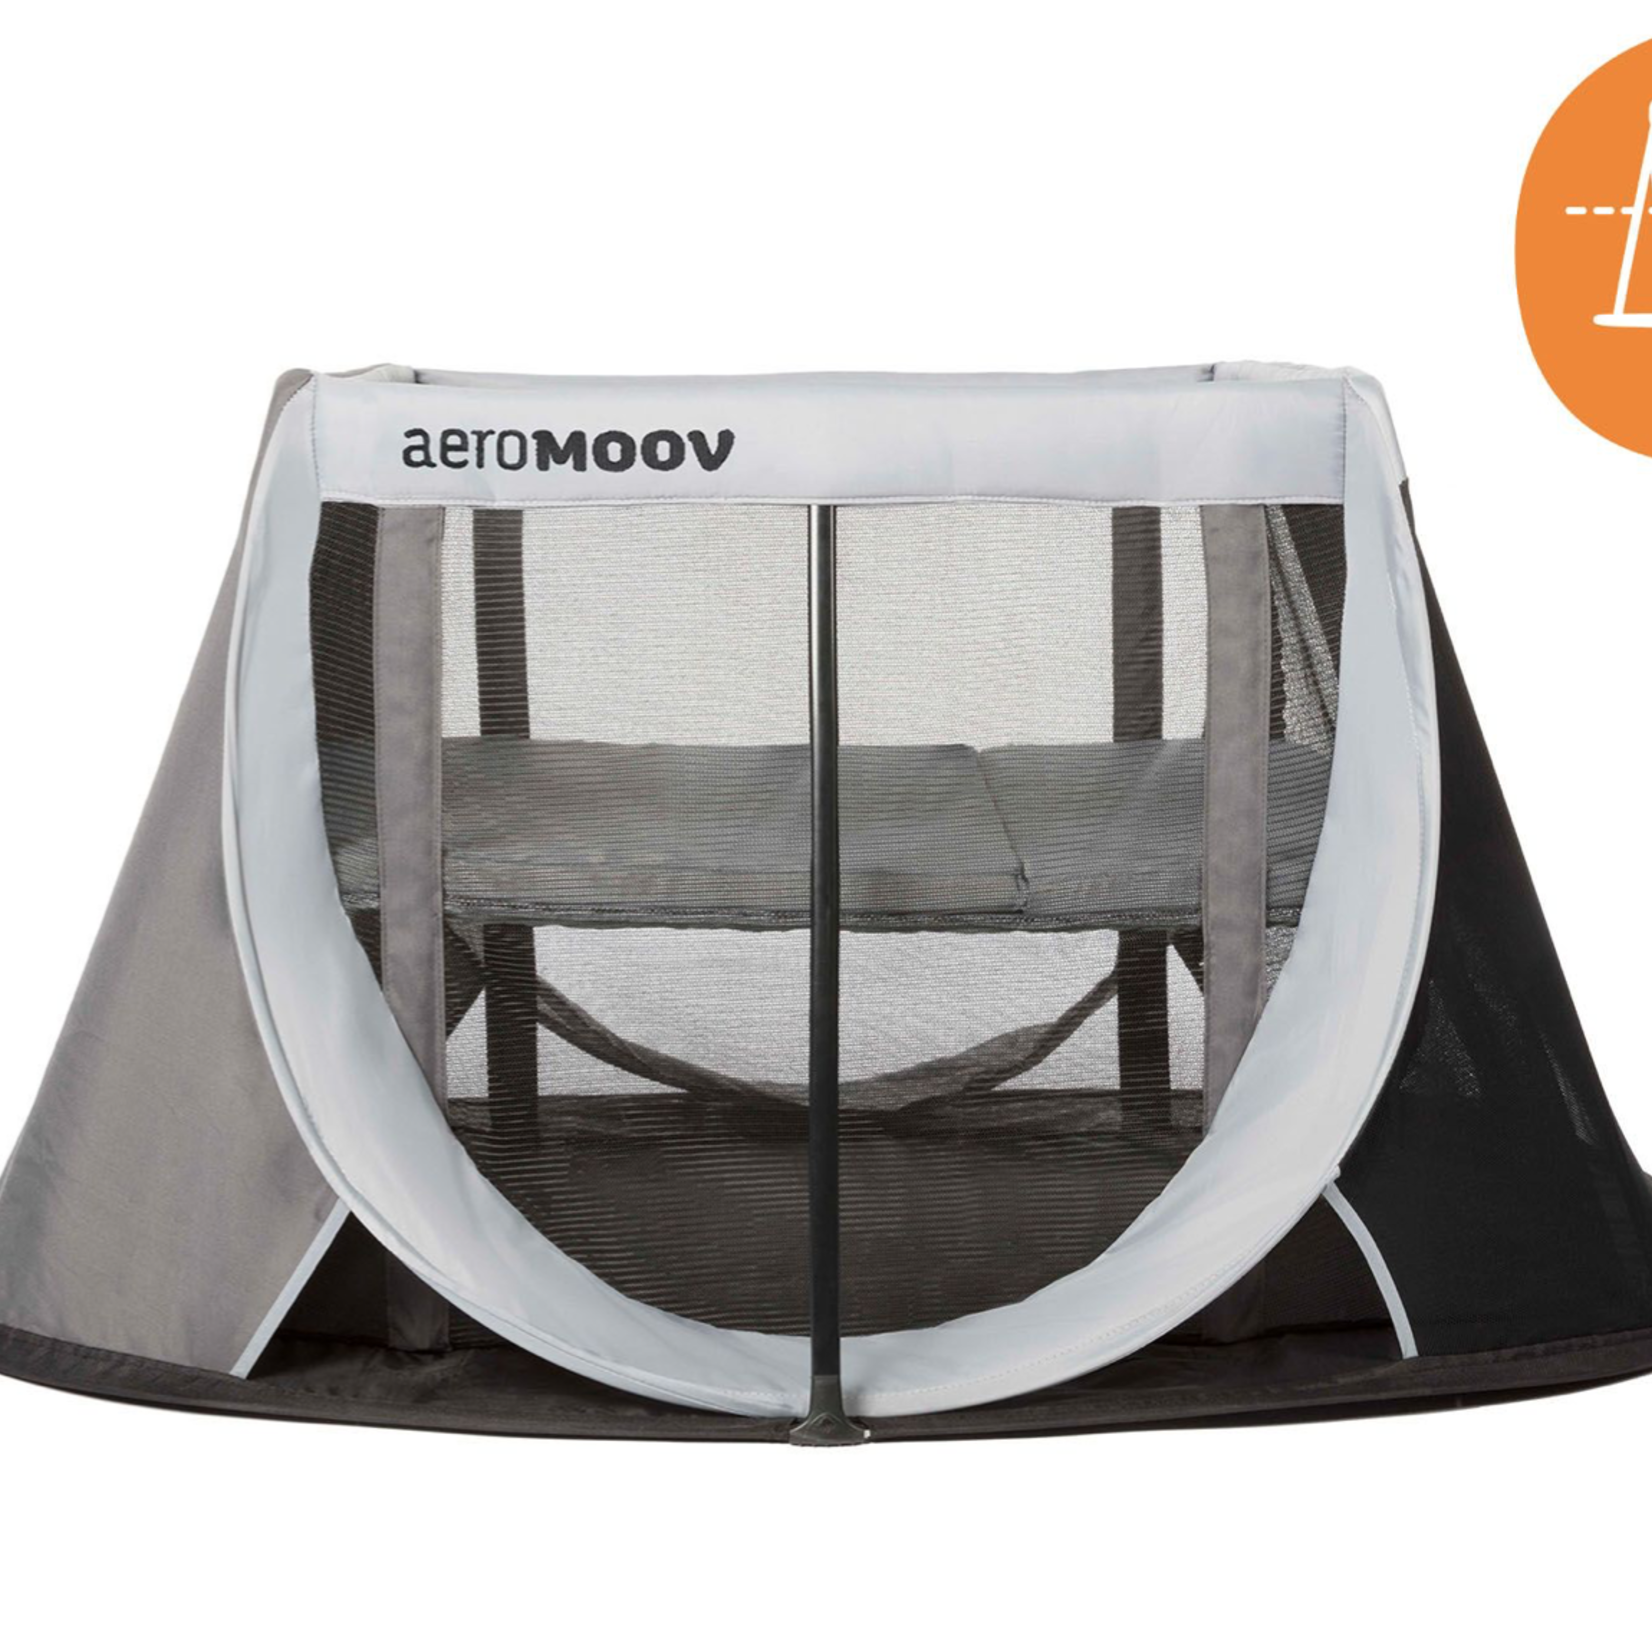 AeroMoov AeroMoov -  Instant travel cot Grey Rock